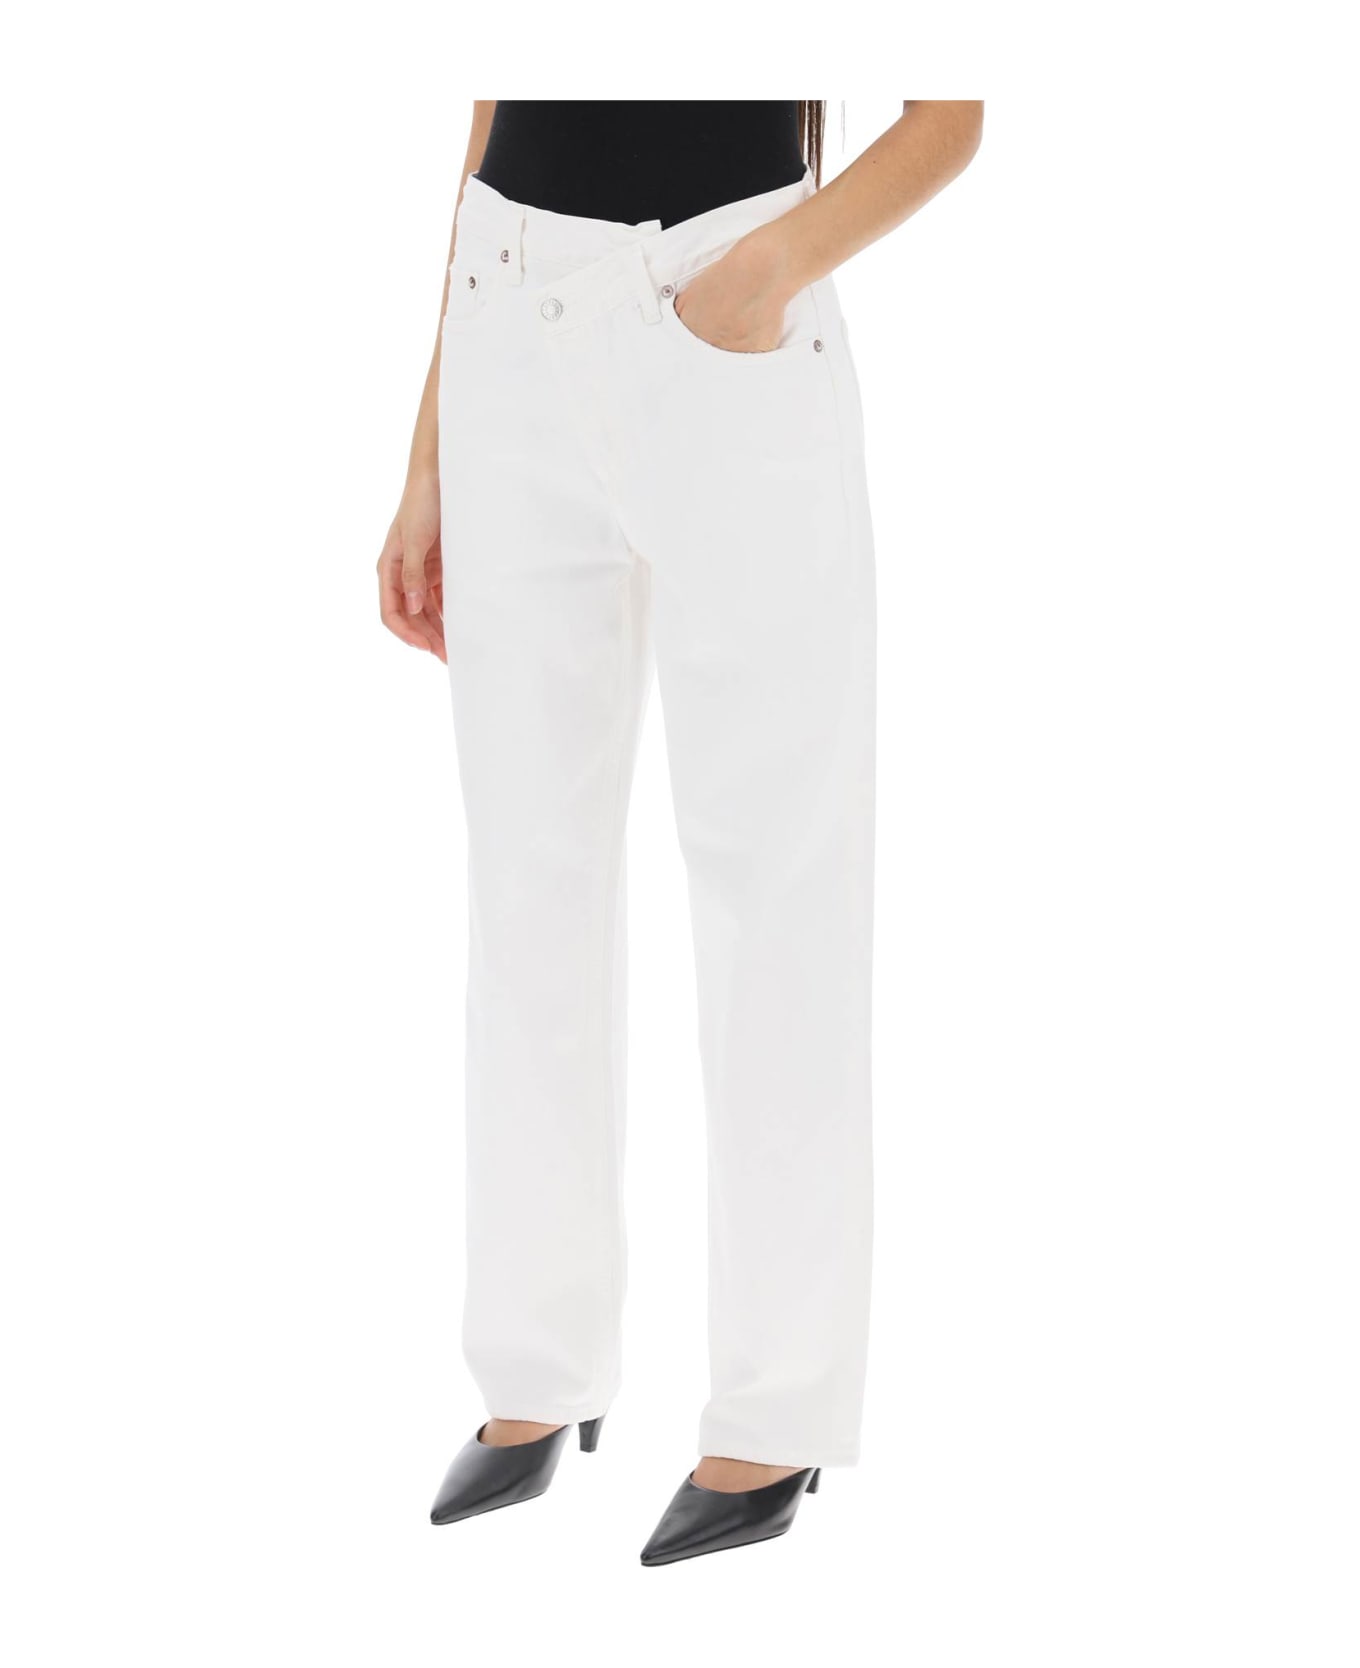 AGOLDE Criss Cross Jeans - MILK SHAKE (White)